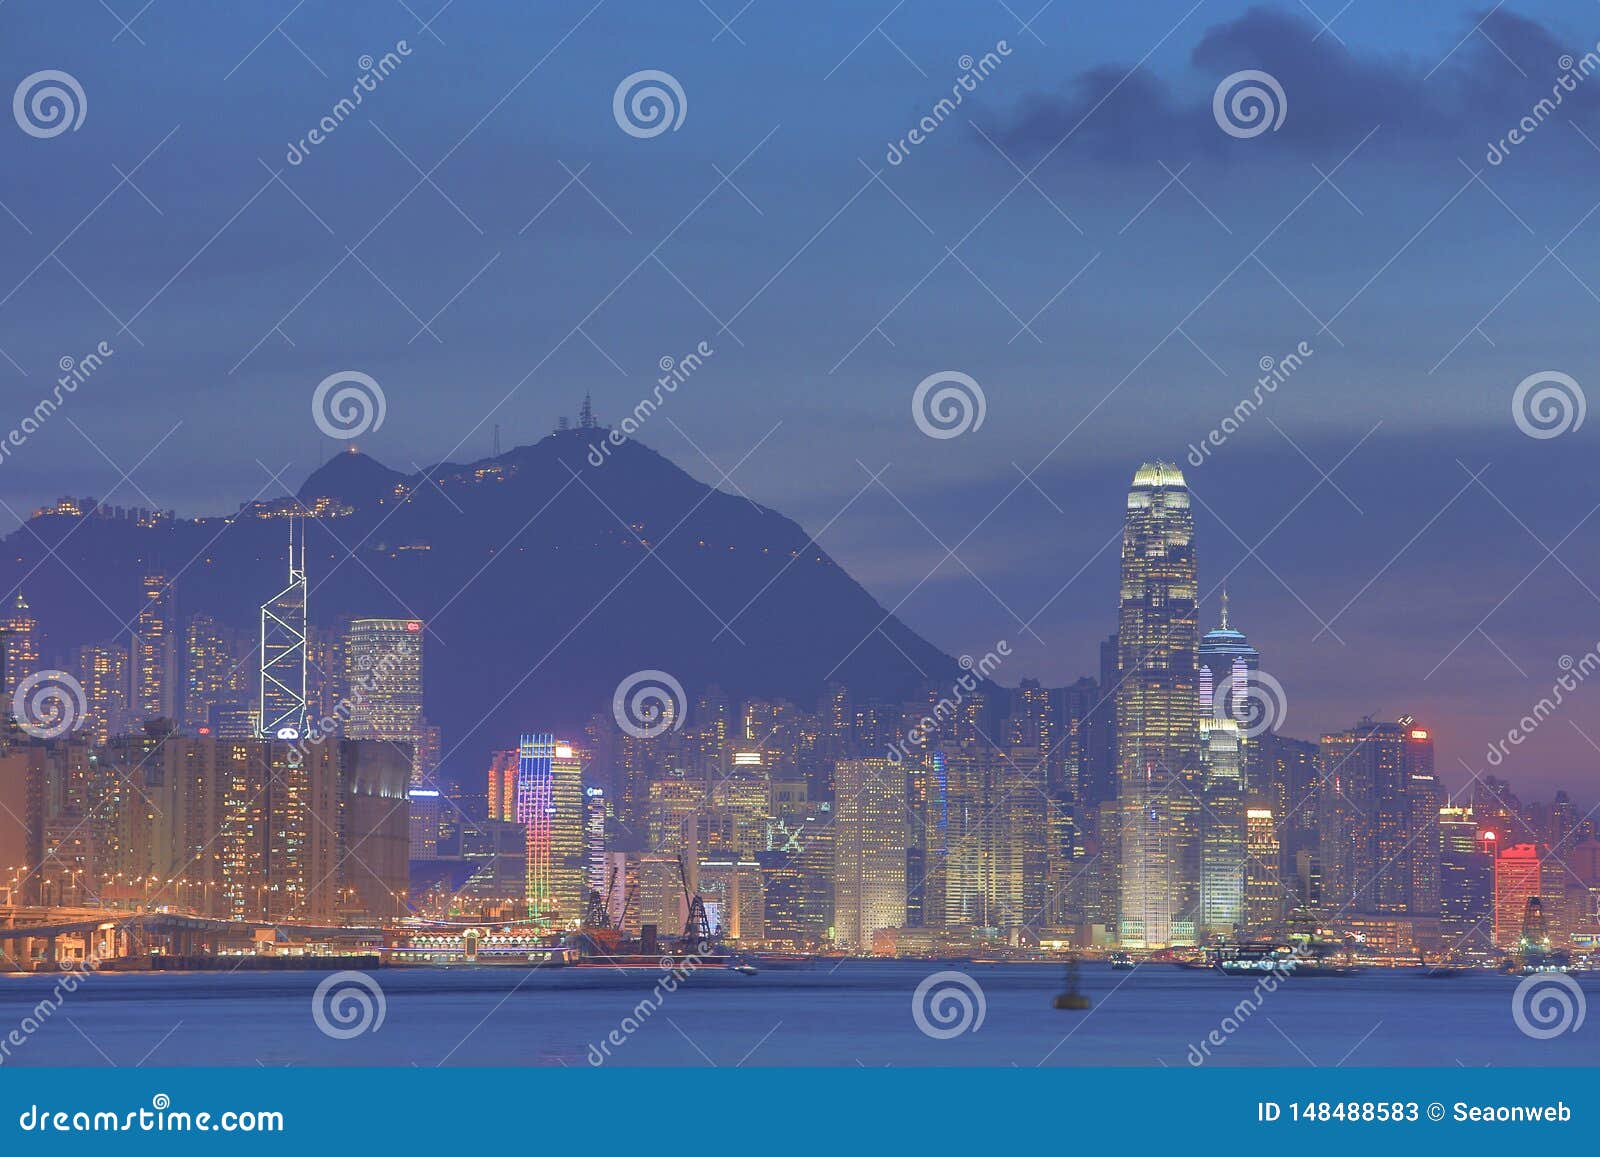 Victoria Harbor of Hong Kong City at Dusk 2014 Stock Image - Image of ...